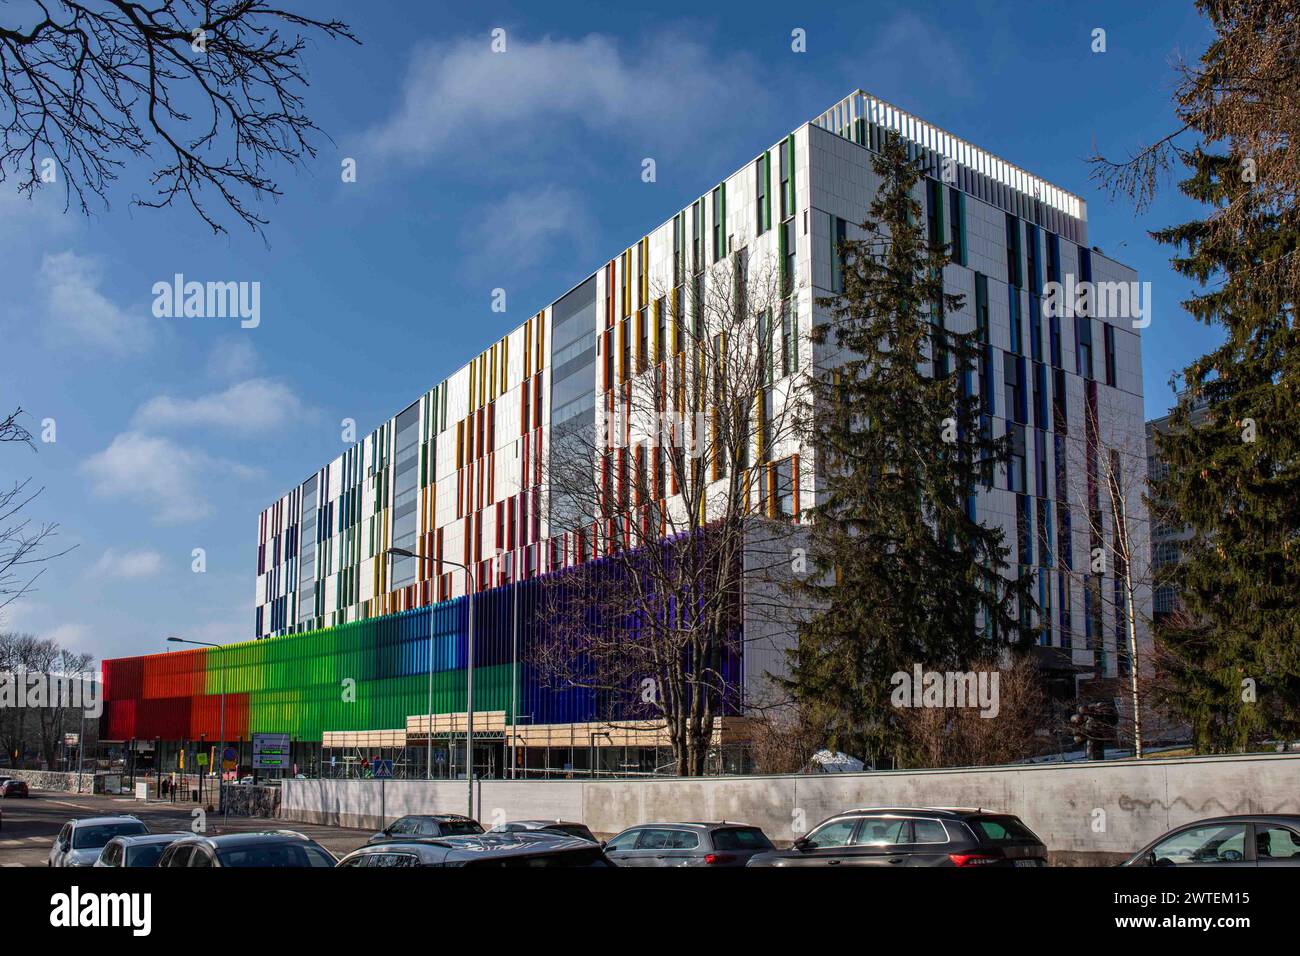 Uusi lastensairaal children's hospital on Meilahti district of Helsinki, Finland Stock Photo